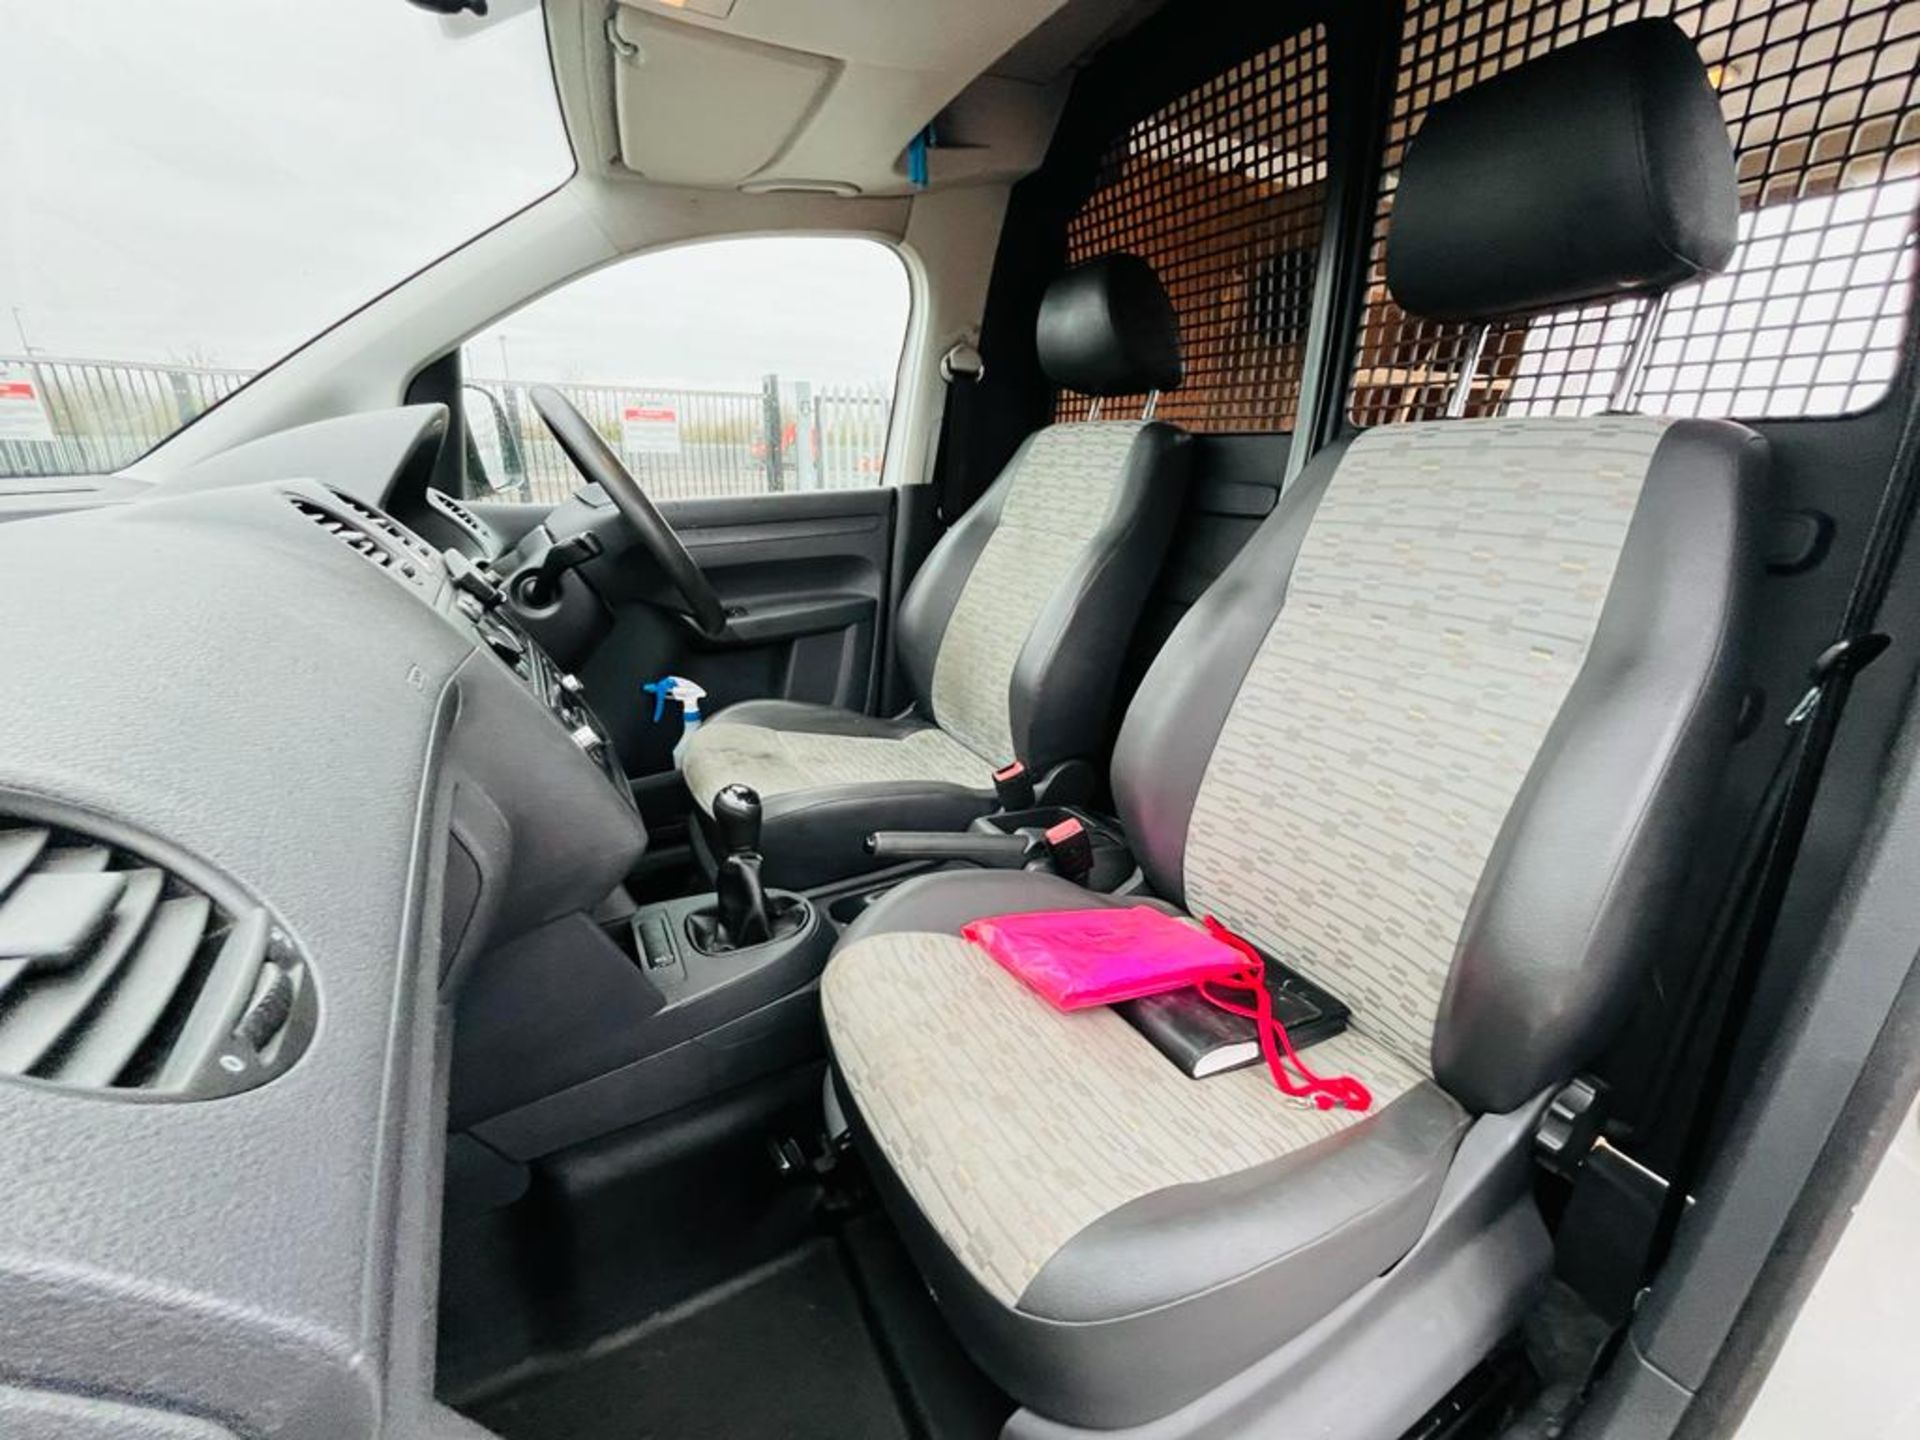 ** ON SALE ** Volkswagen Caddy C20 1.6 TDI 102 2013 '13 Reg' - Panel Van - No Vat - Image 24 of 28